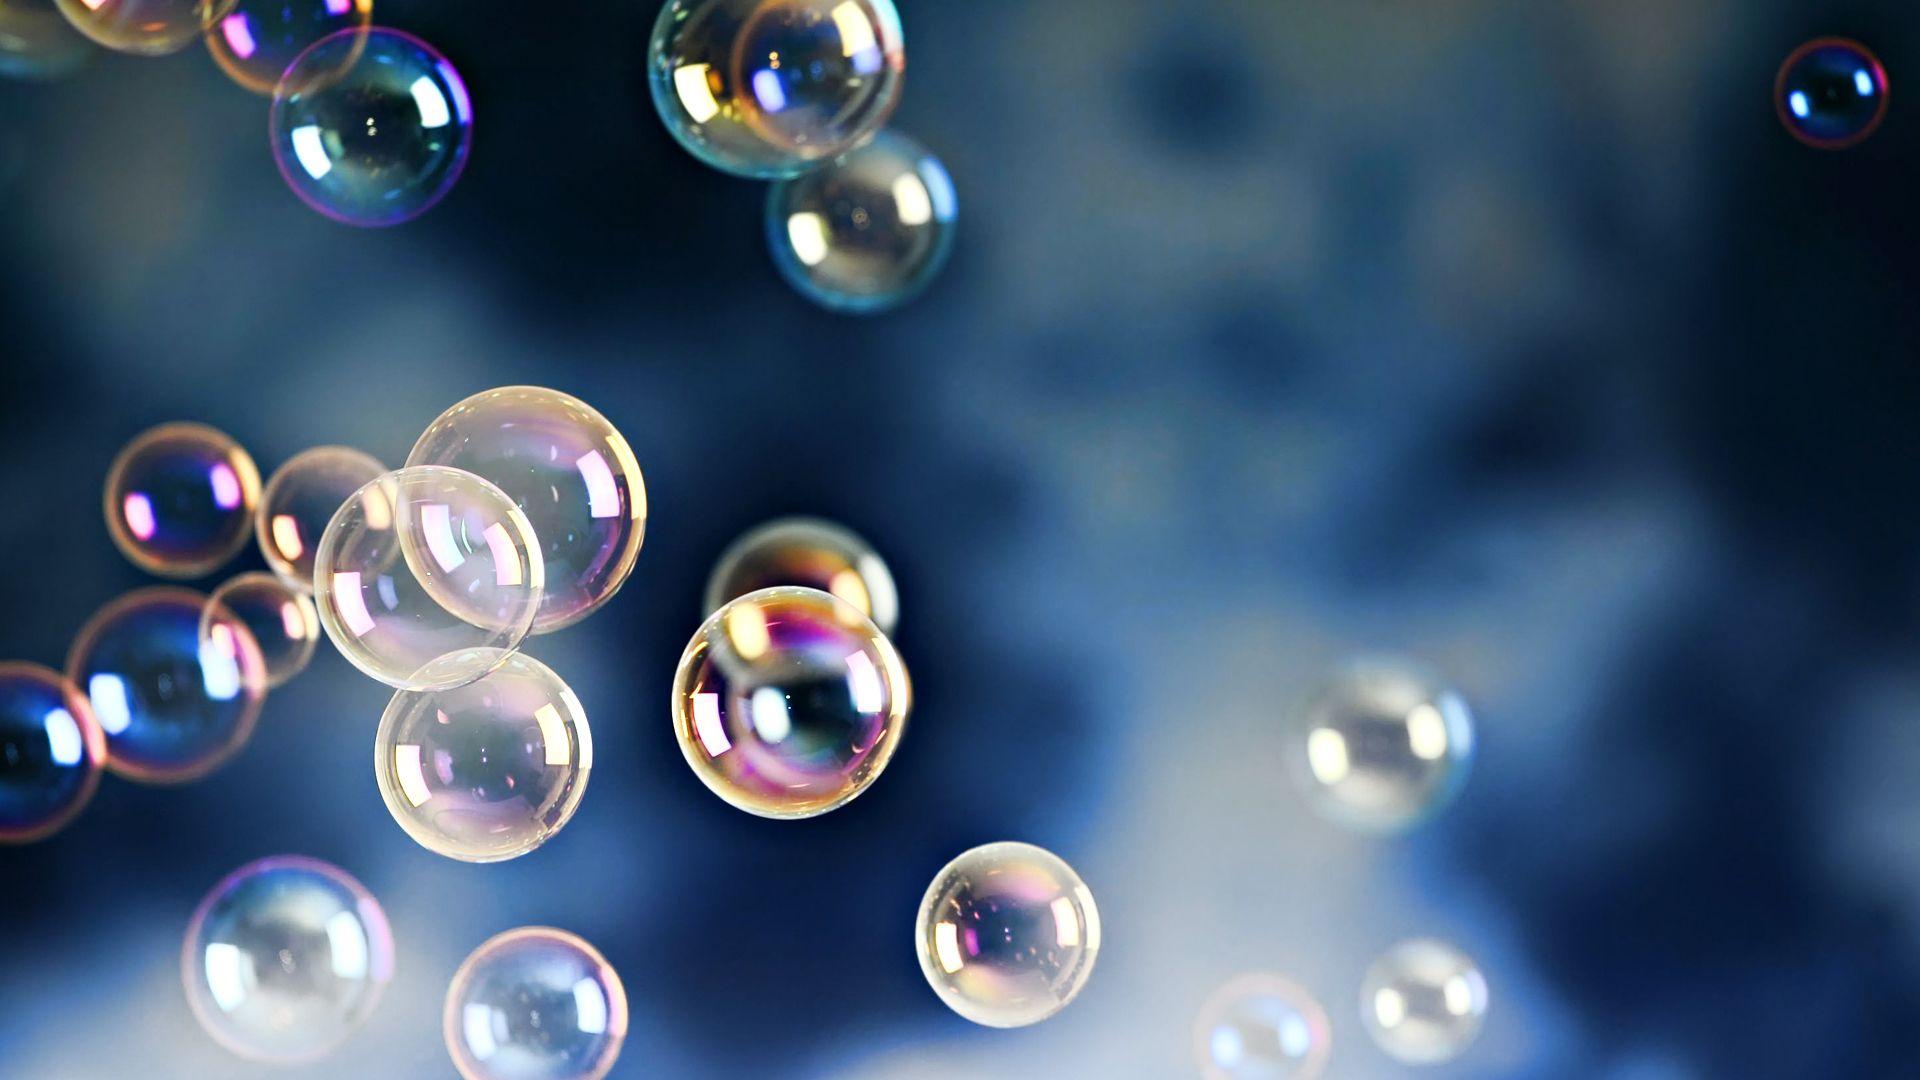 Bubble Wallpaper, Picture, Image